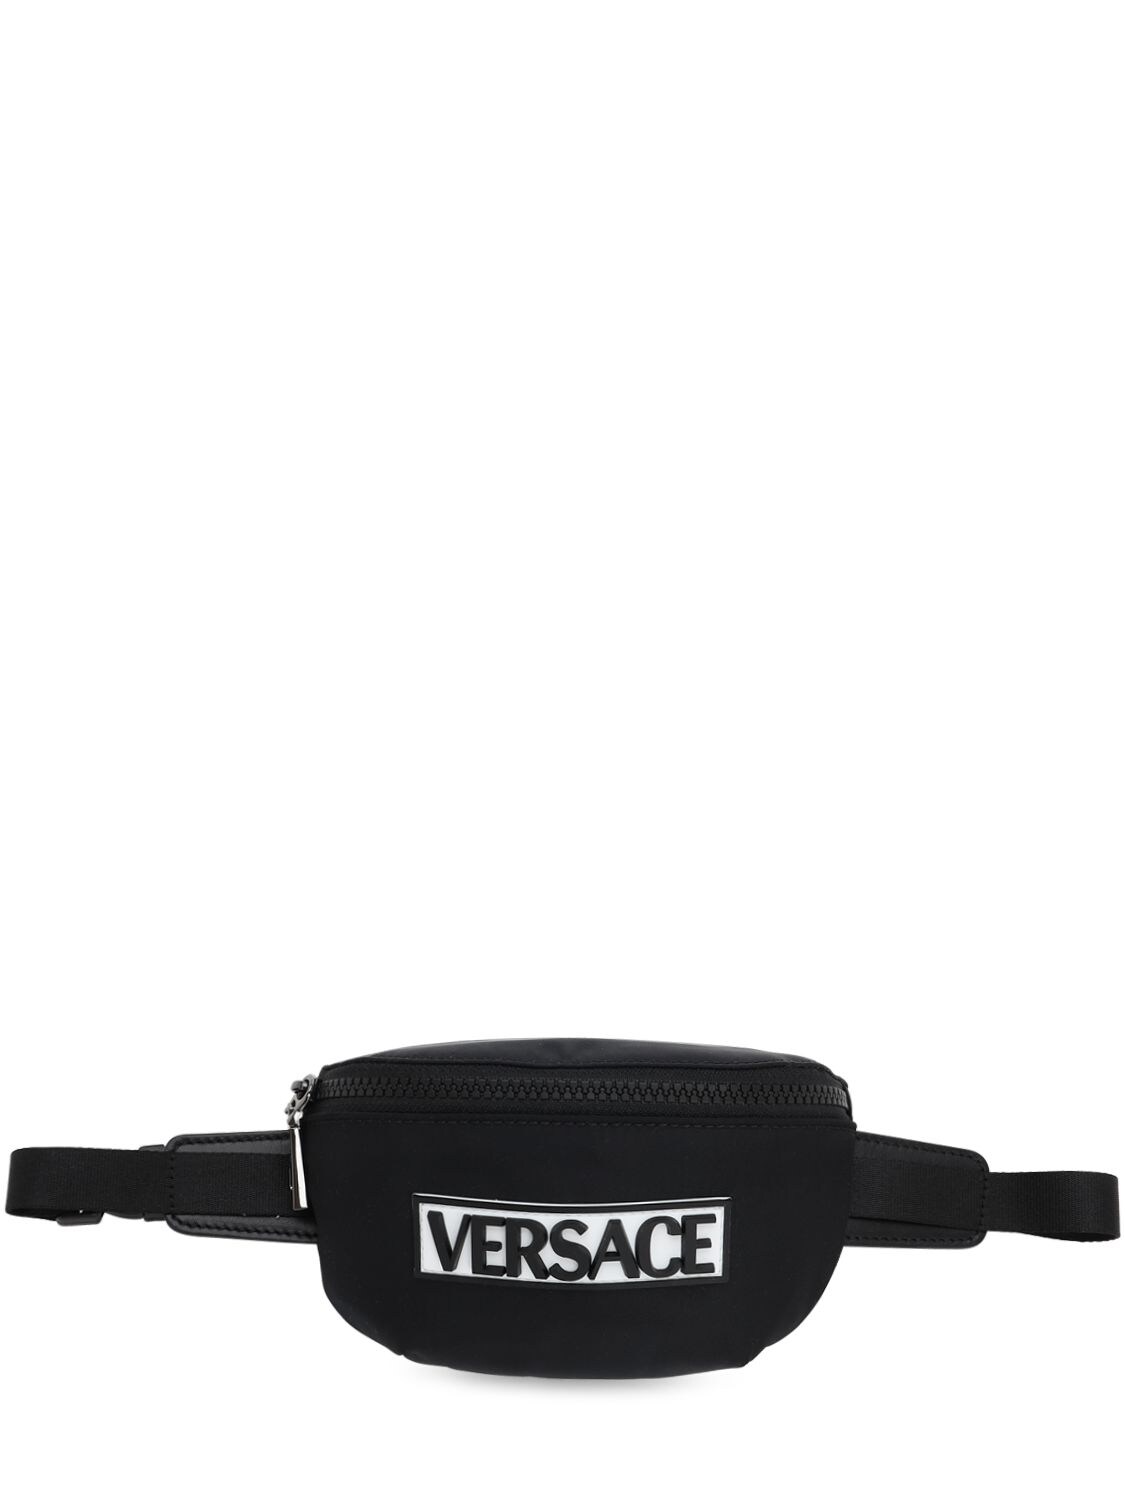 Versace Kids' Rubberized Patch Nylon Belt Bag In Black